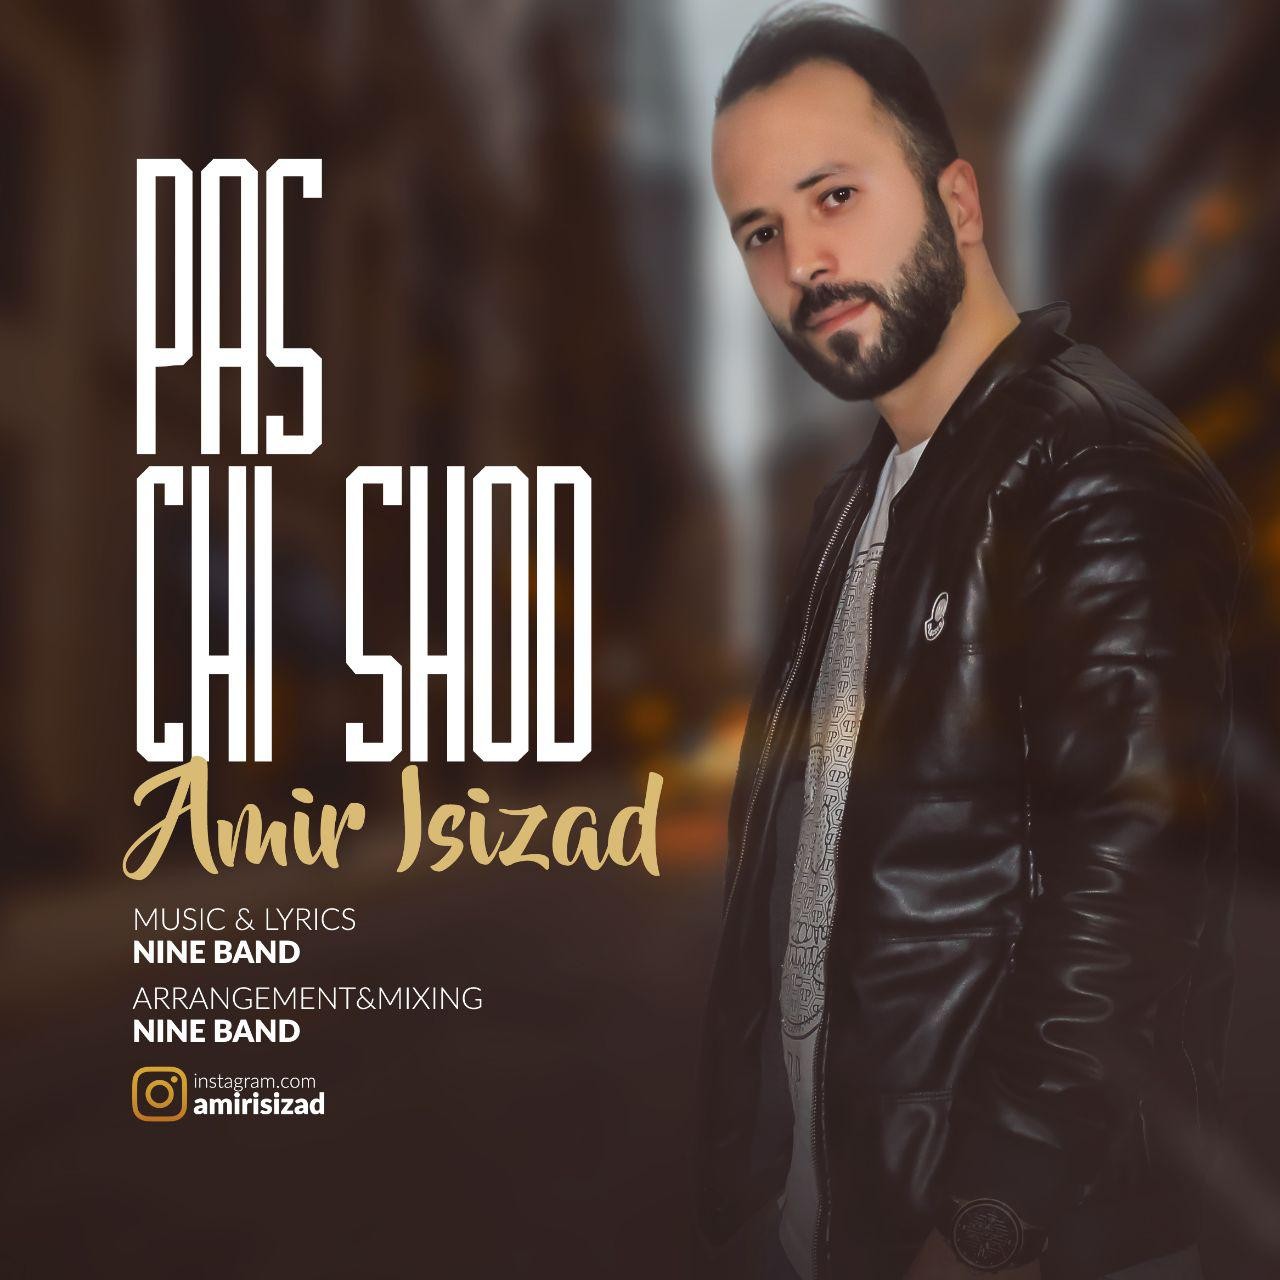  دانلود آهنگ جدید امیر ایسی زاد - پس چی شد | Download New Music By Amir Isizad  - Pas Chi Shod